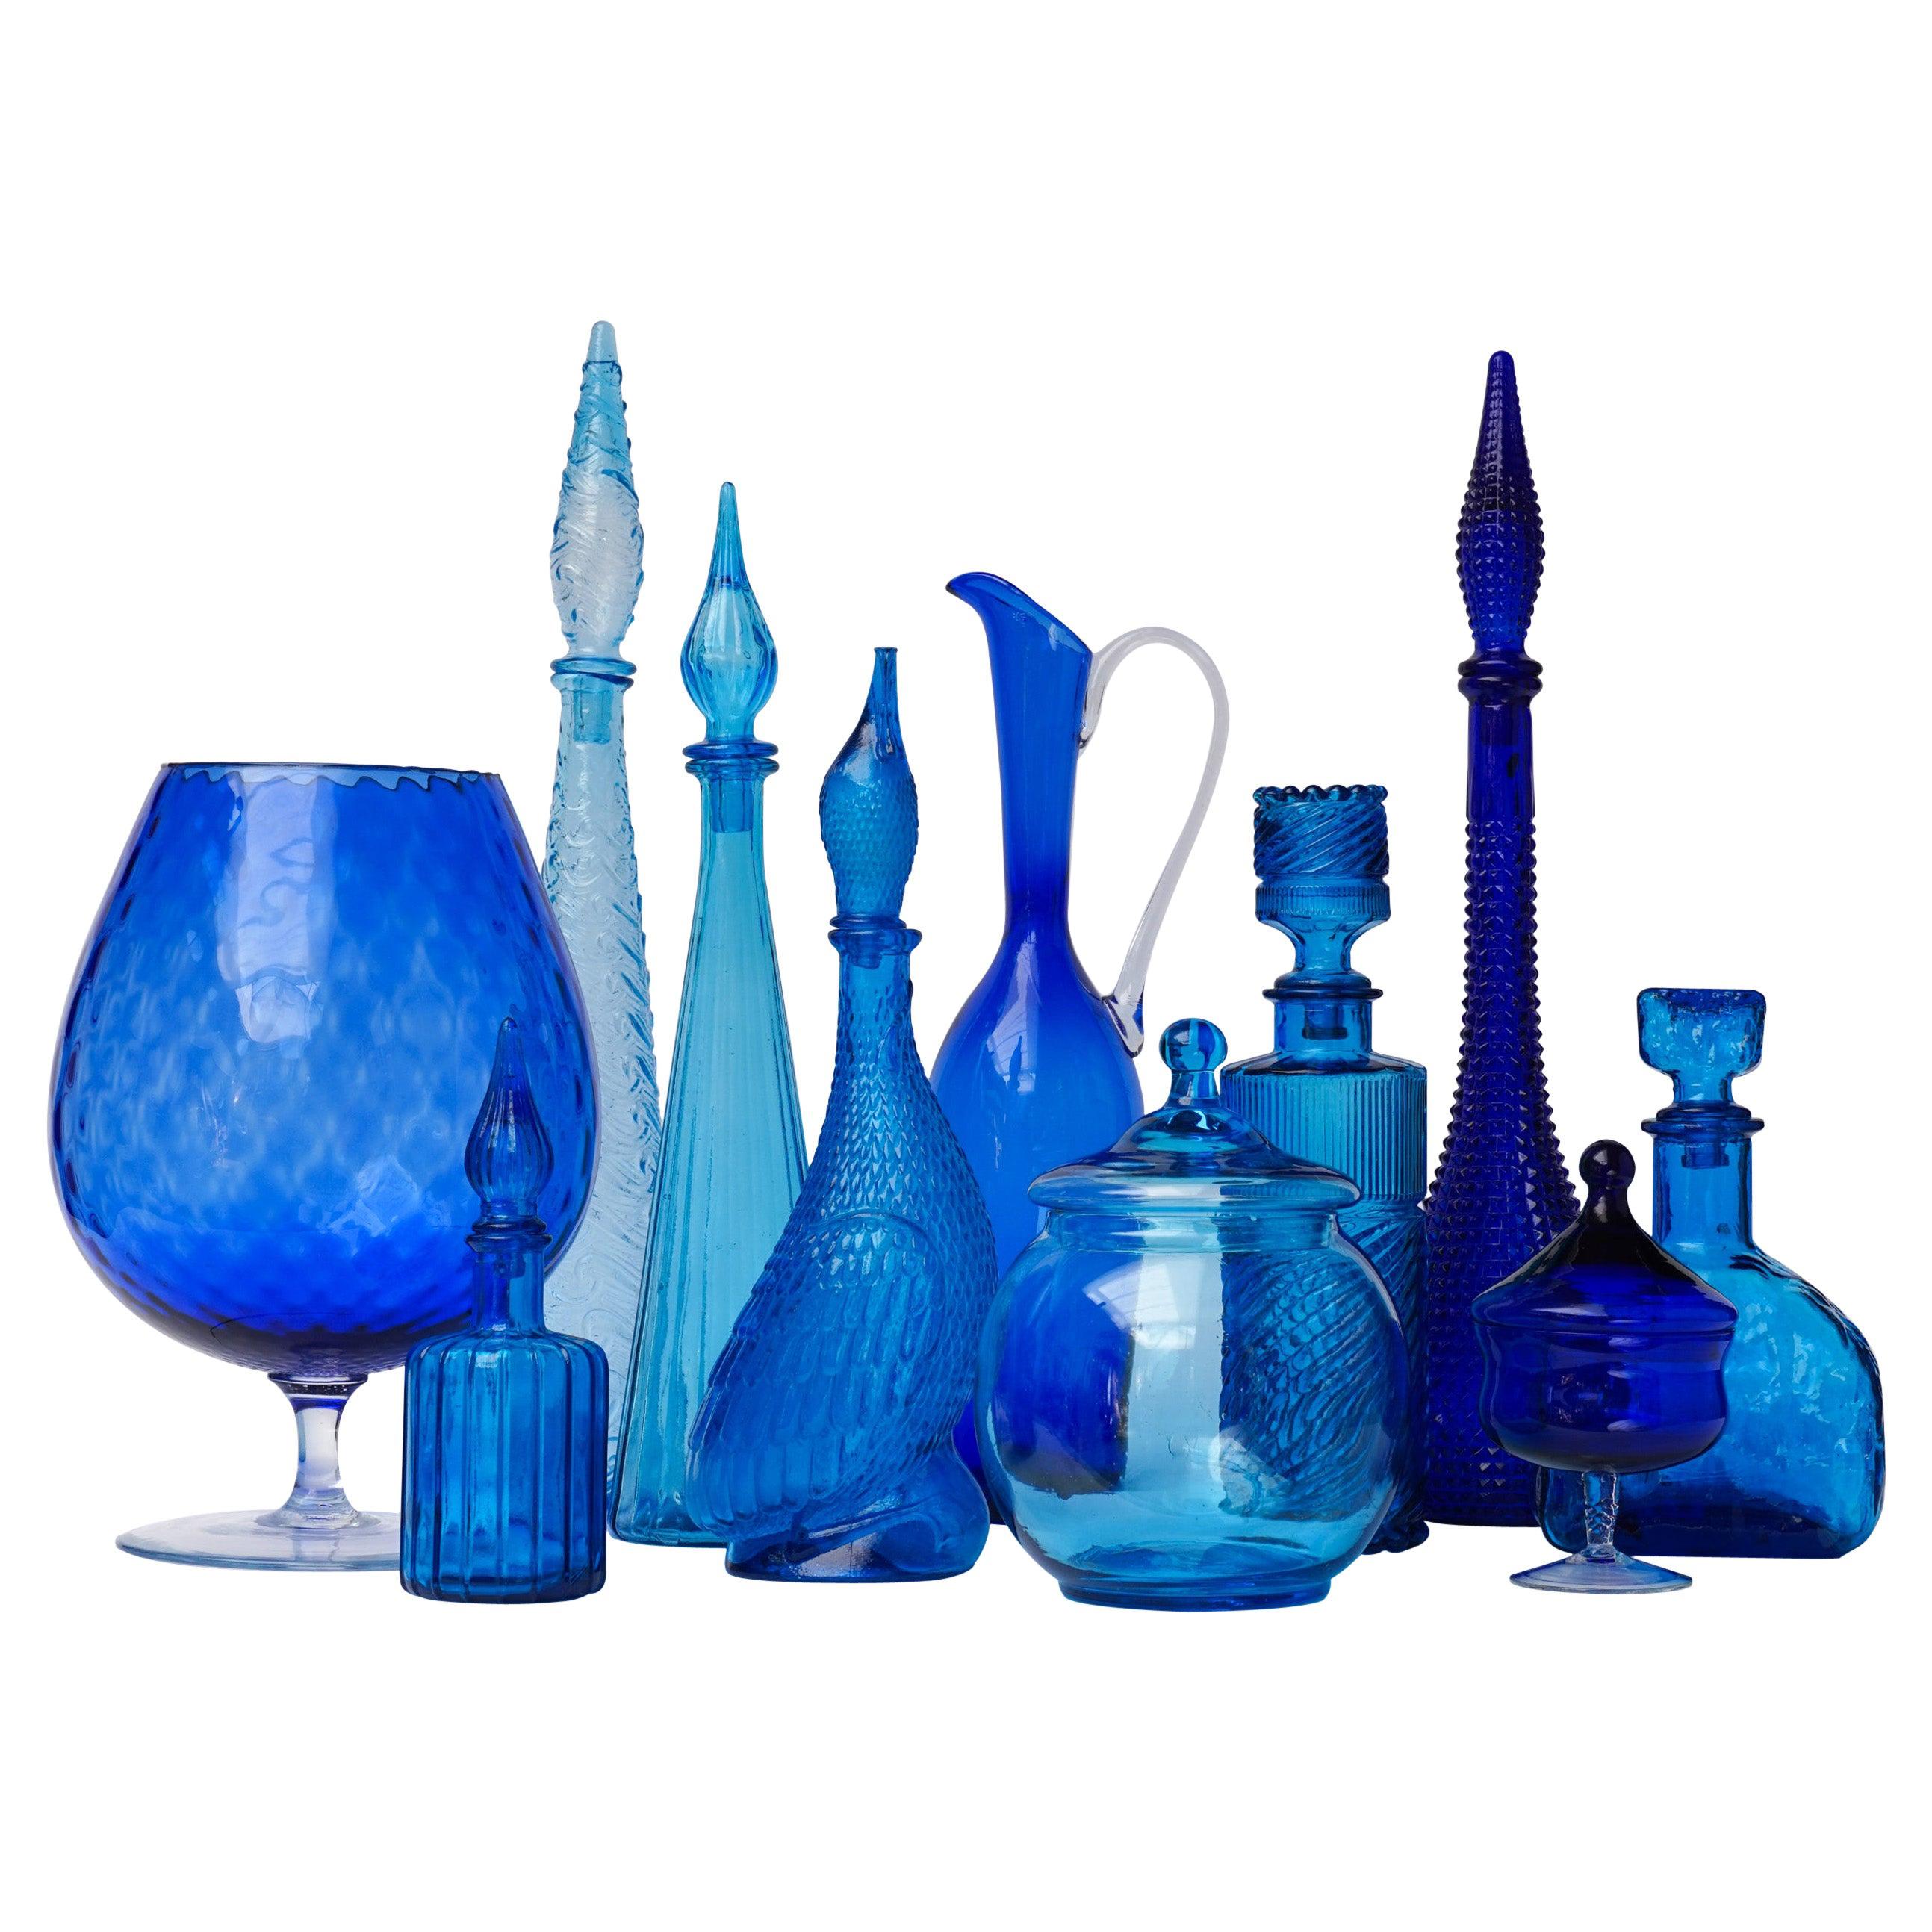 Onze bouteilles de génie en verre bleu des années 1960 de l'Italie Empoli Décanteurs:: vases et bonbonnières